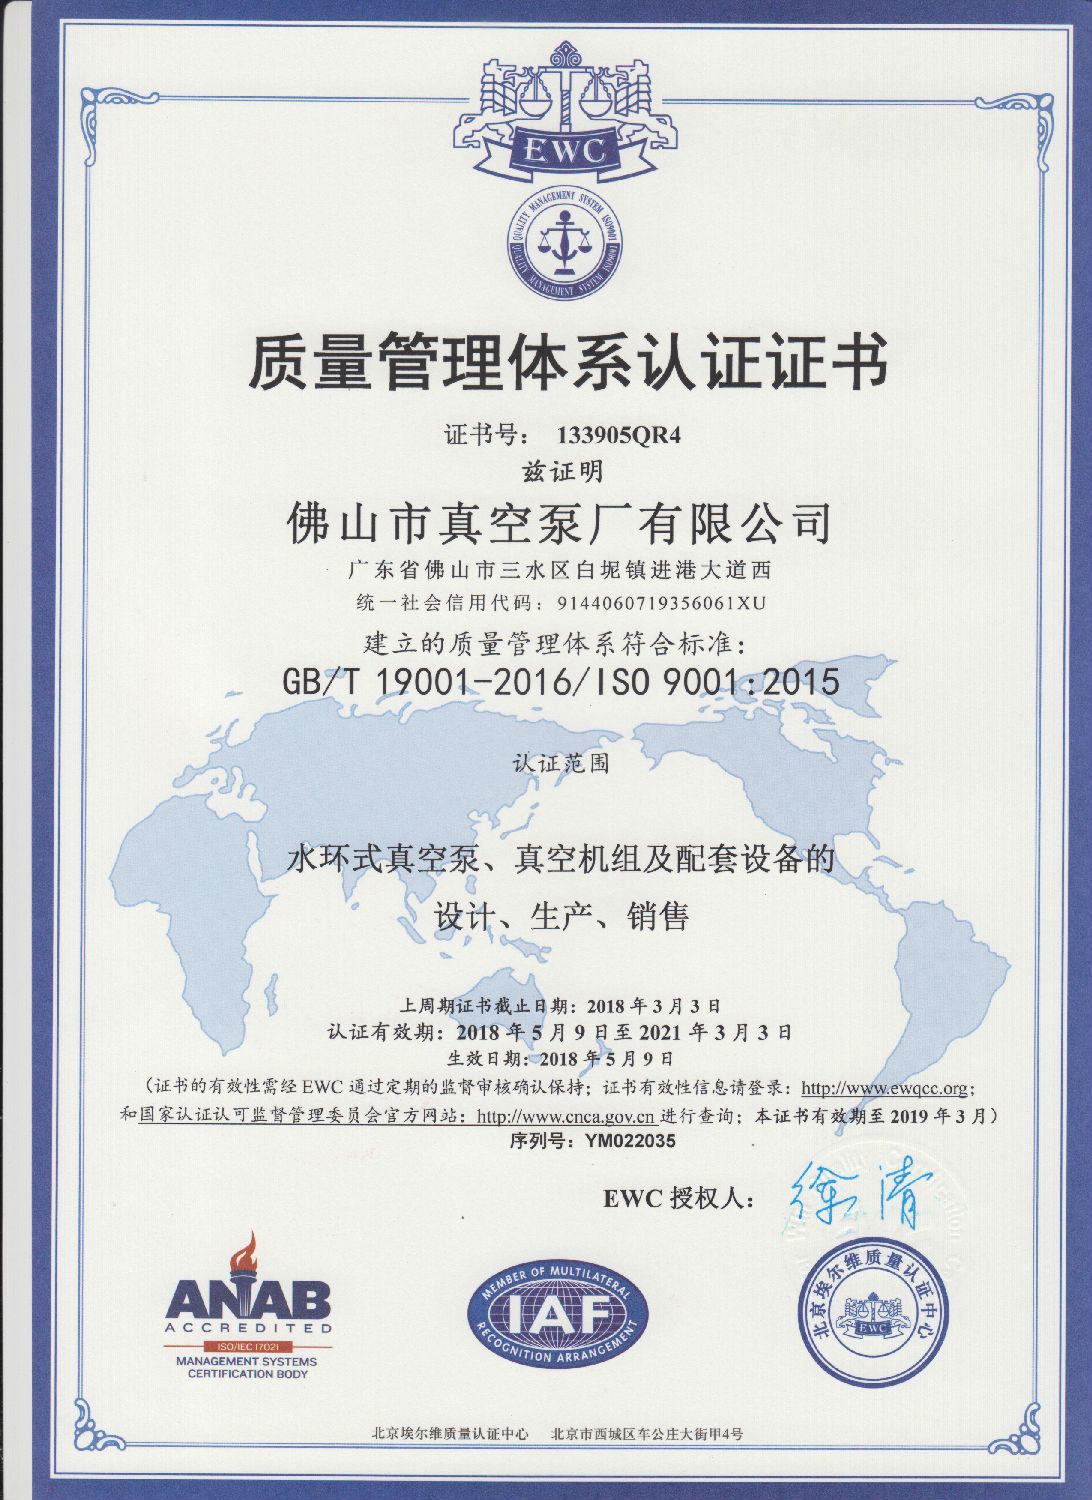 佛真水環真空泵ISO質量管理體系認證證書(中文版)